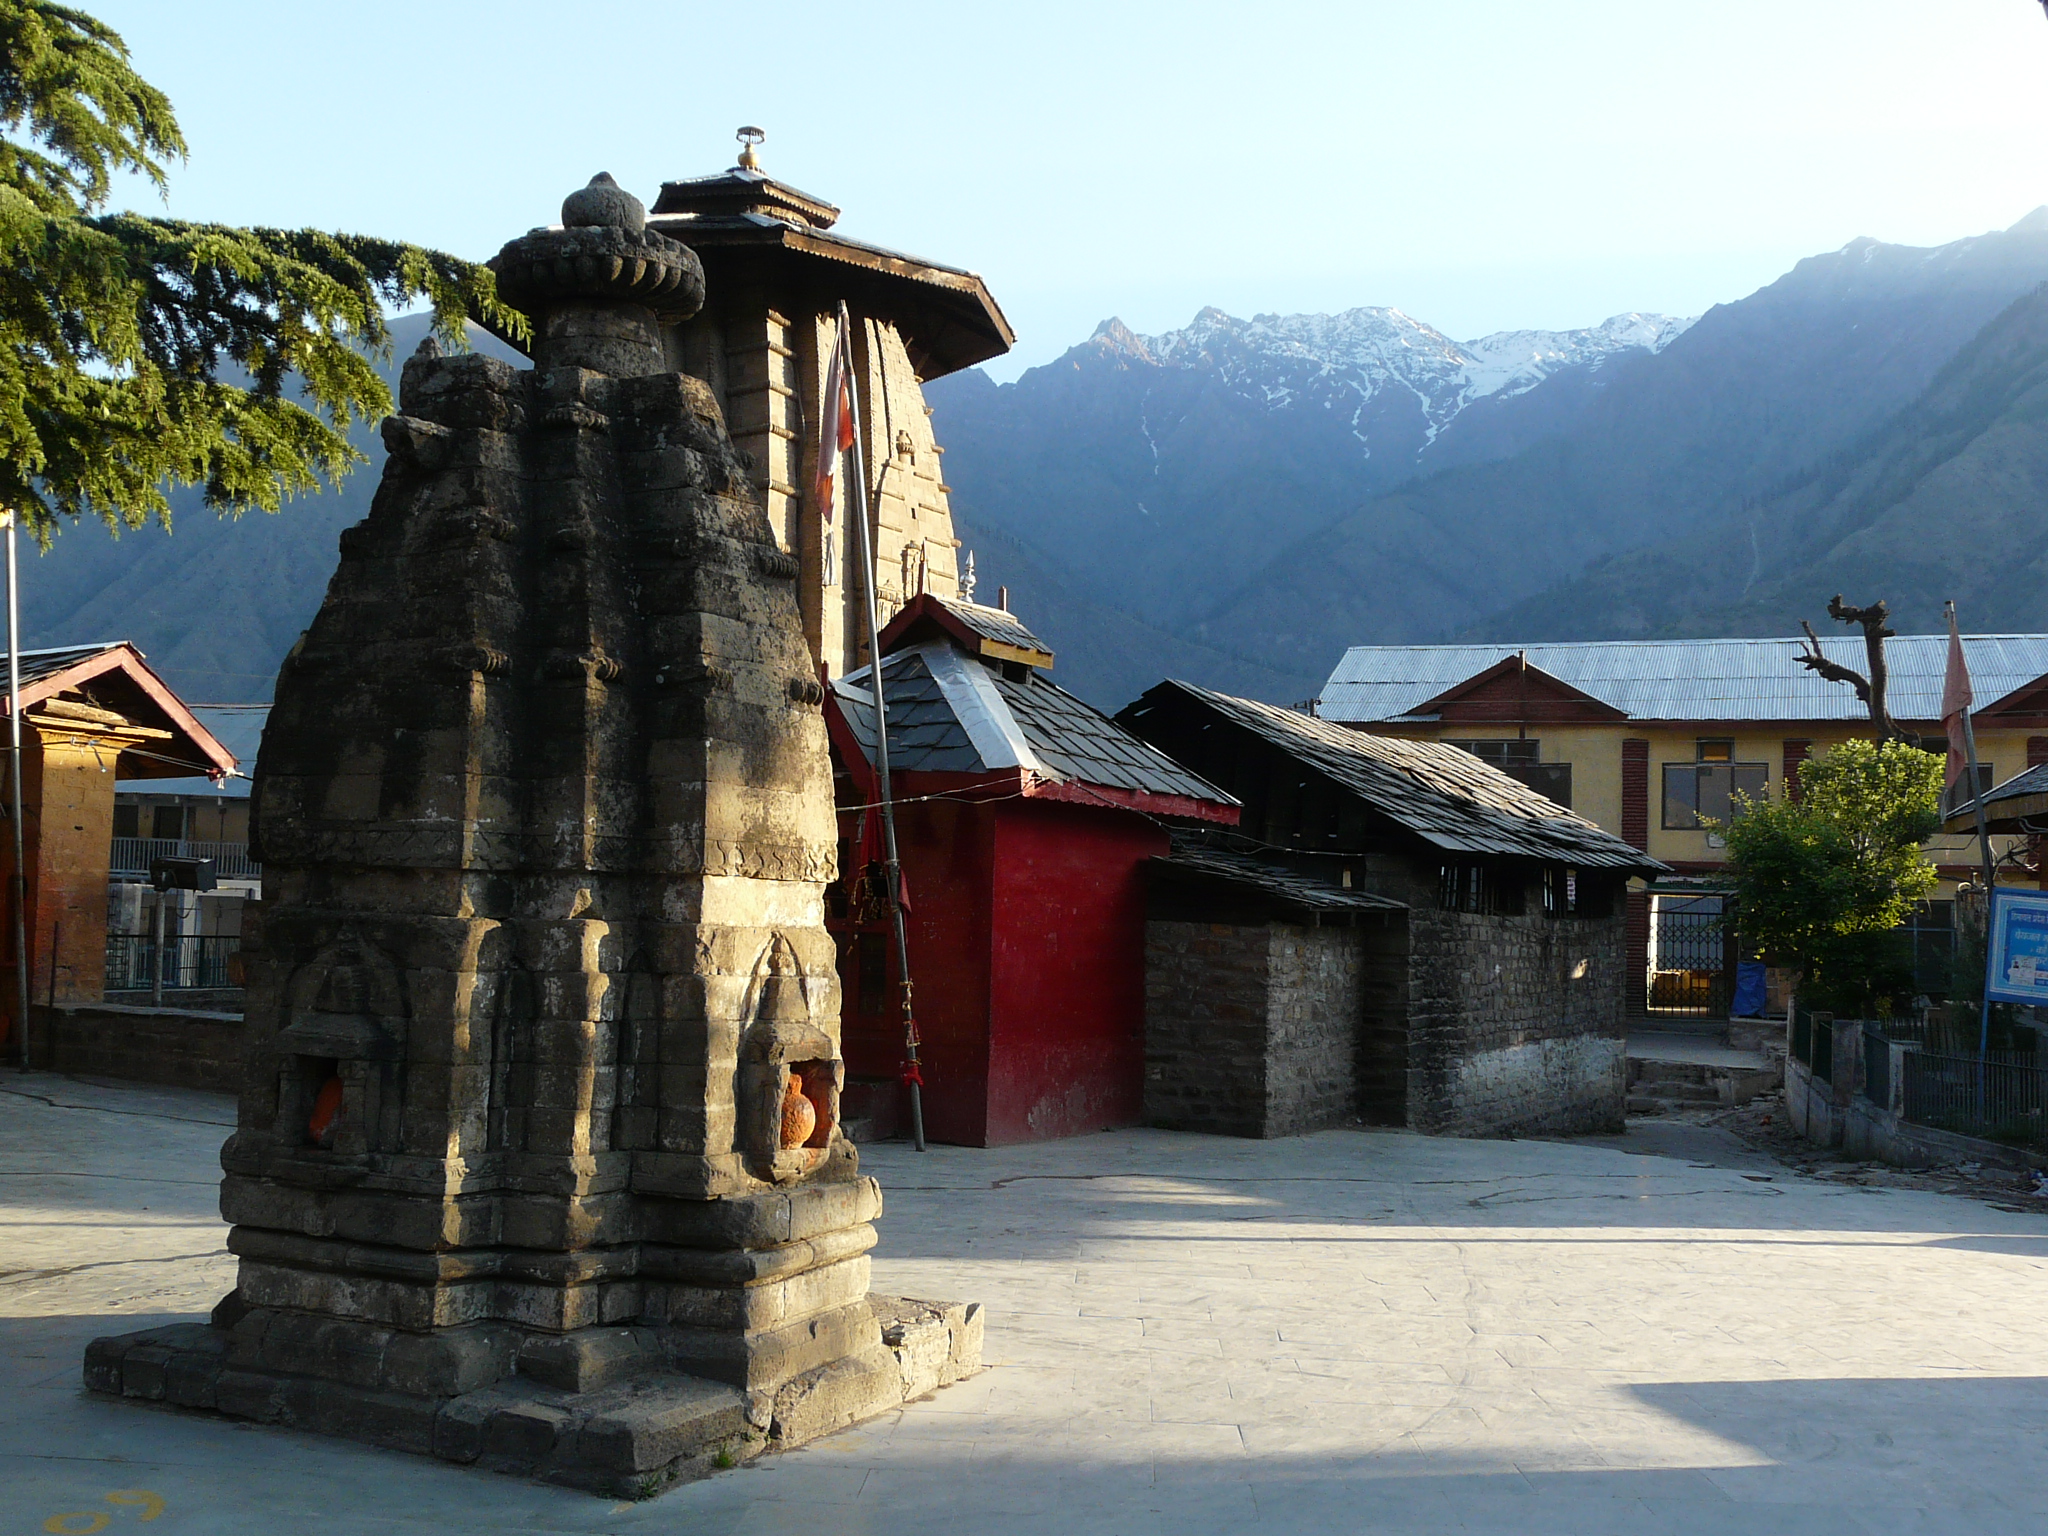 Bharmour Temple - The Chaurashi temple